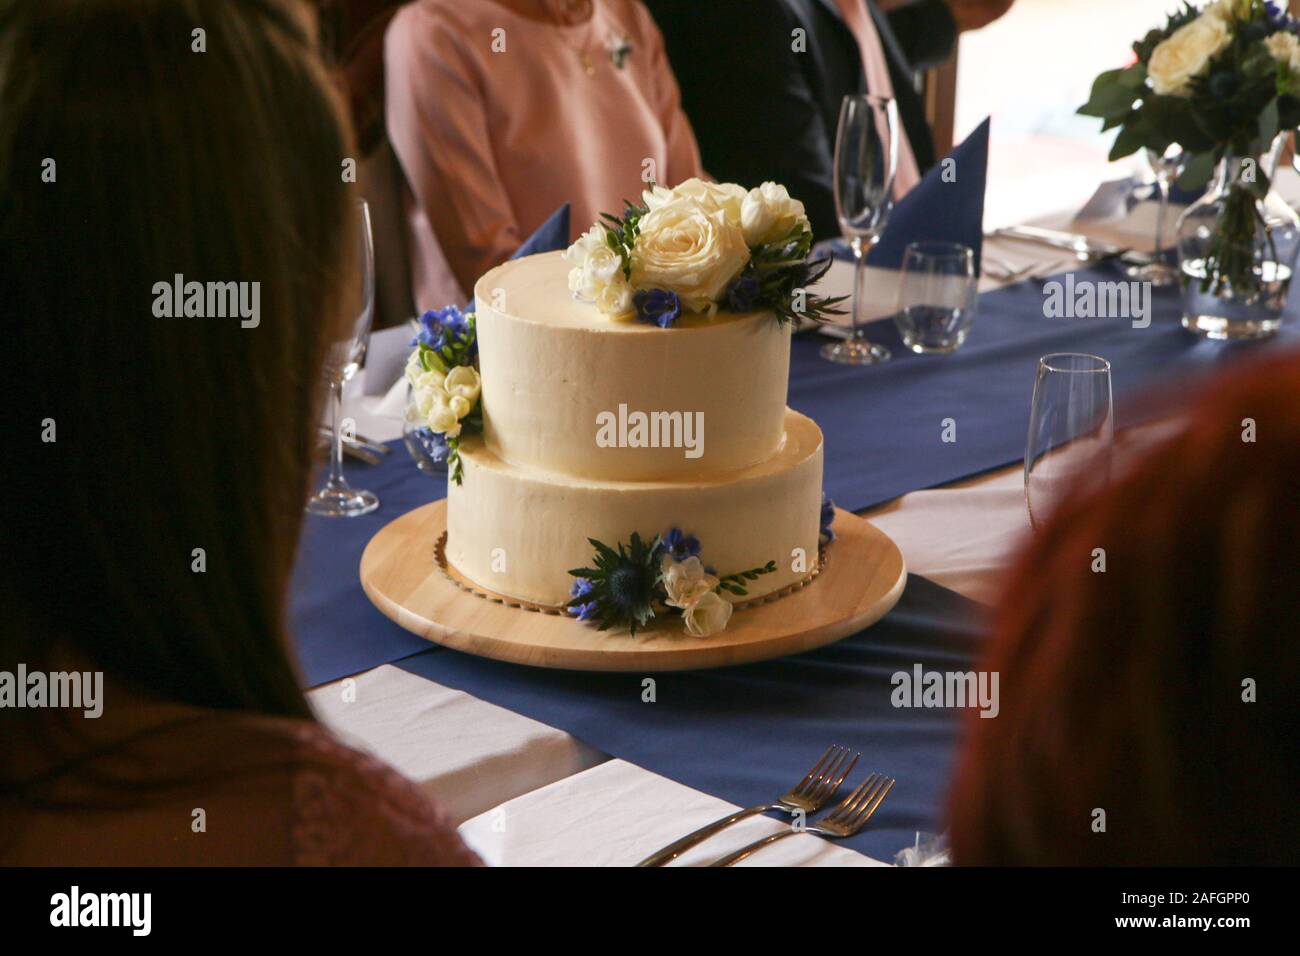 Détail d'une photo du gros gâteau de mariage avec décoration florale. Banque D'Images